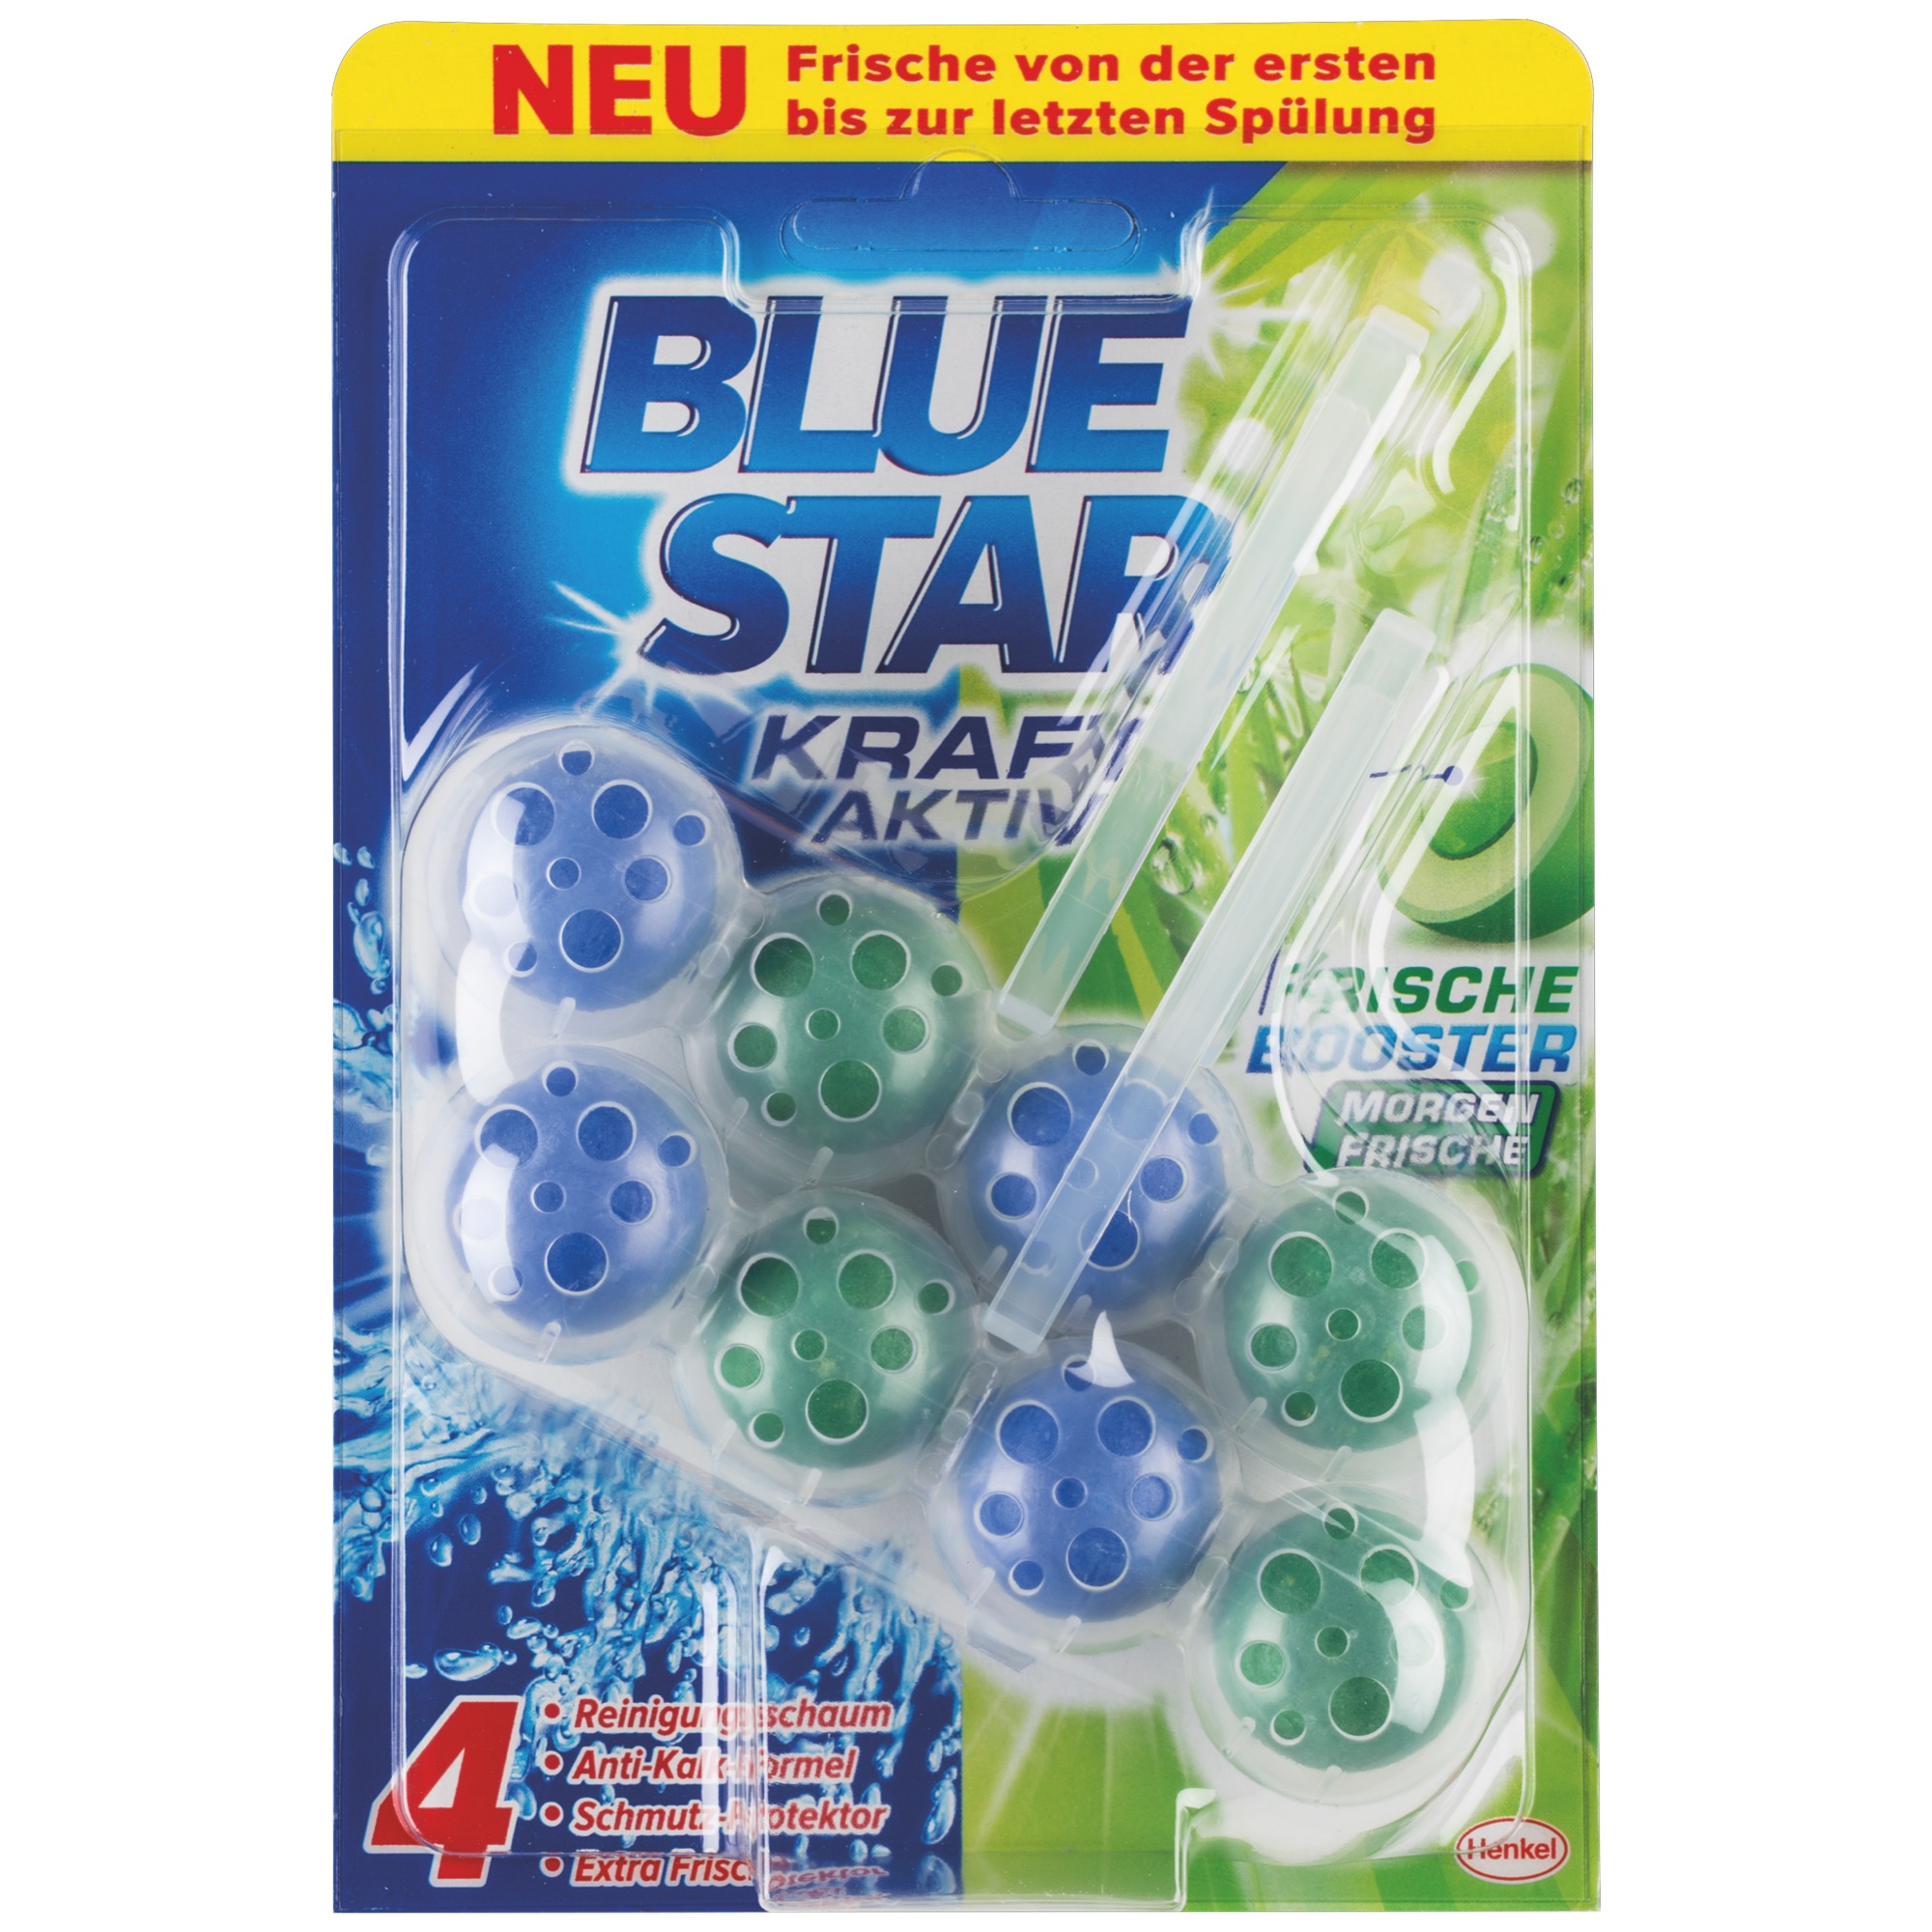 Blue Star Kraft Aktive VP Morgenfrische